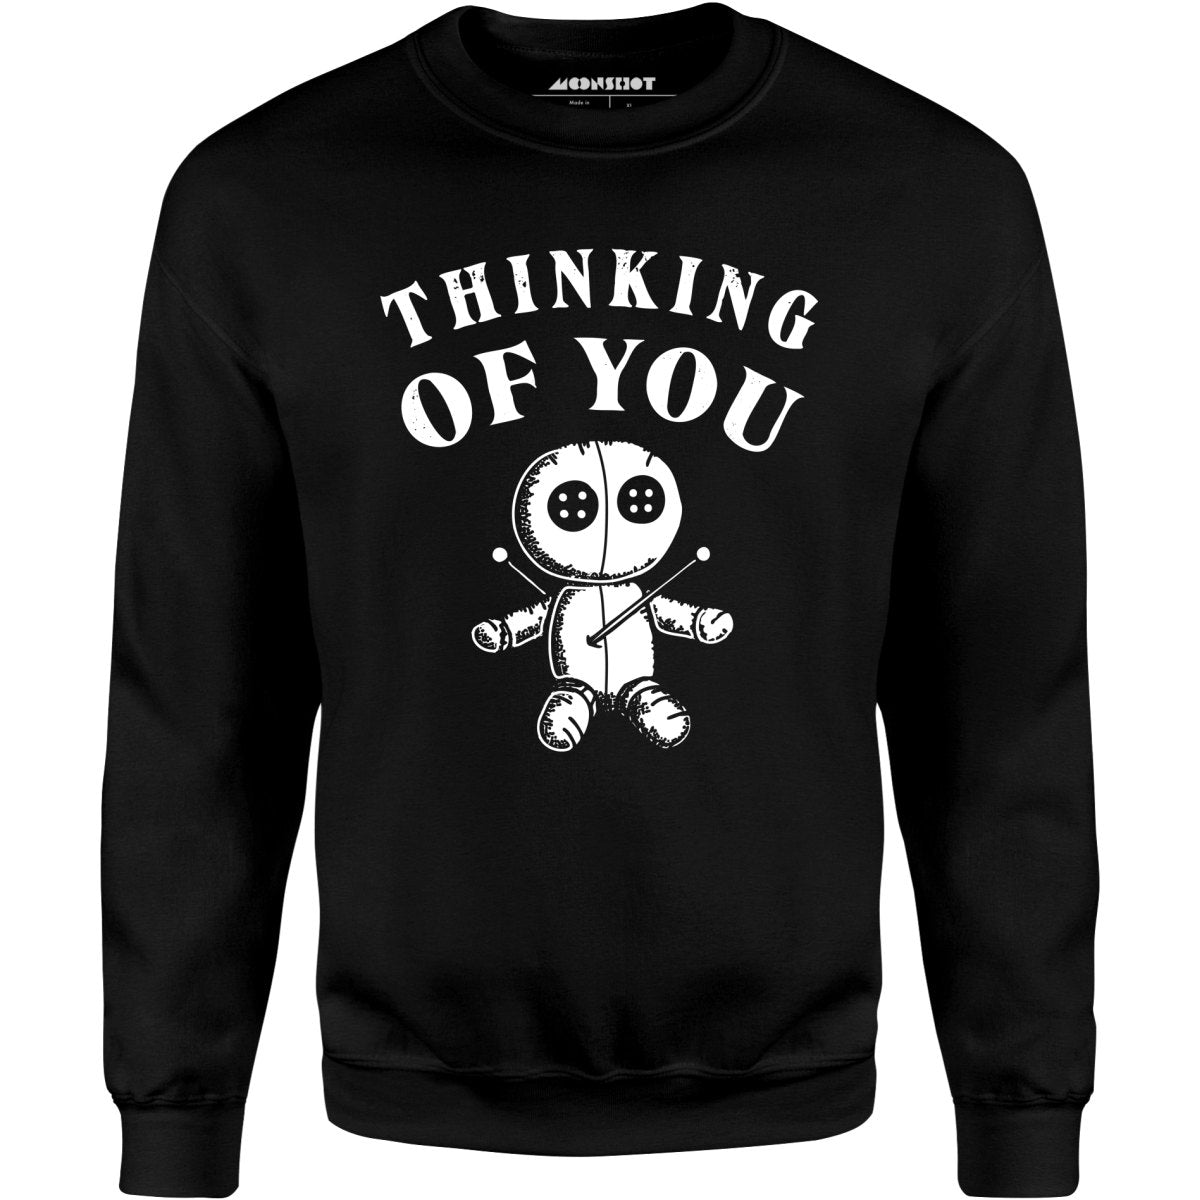 Thinking of You. - Unisex Sweatshirt